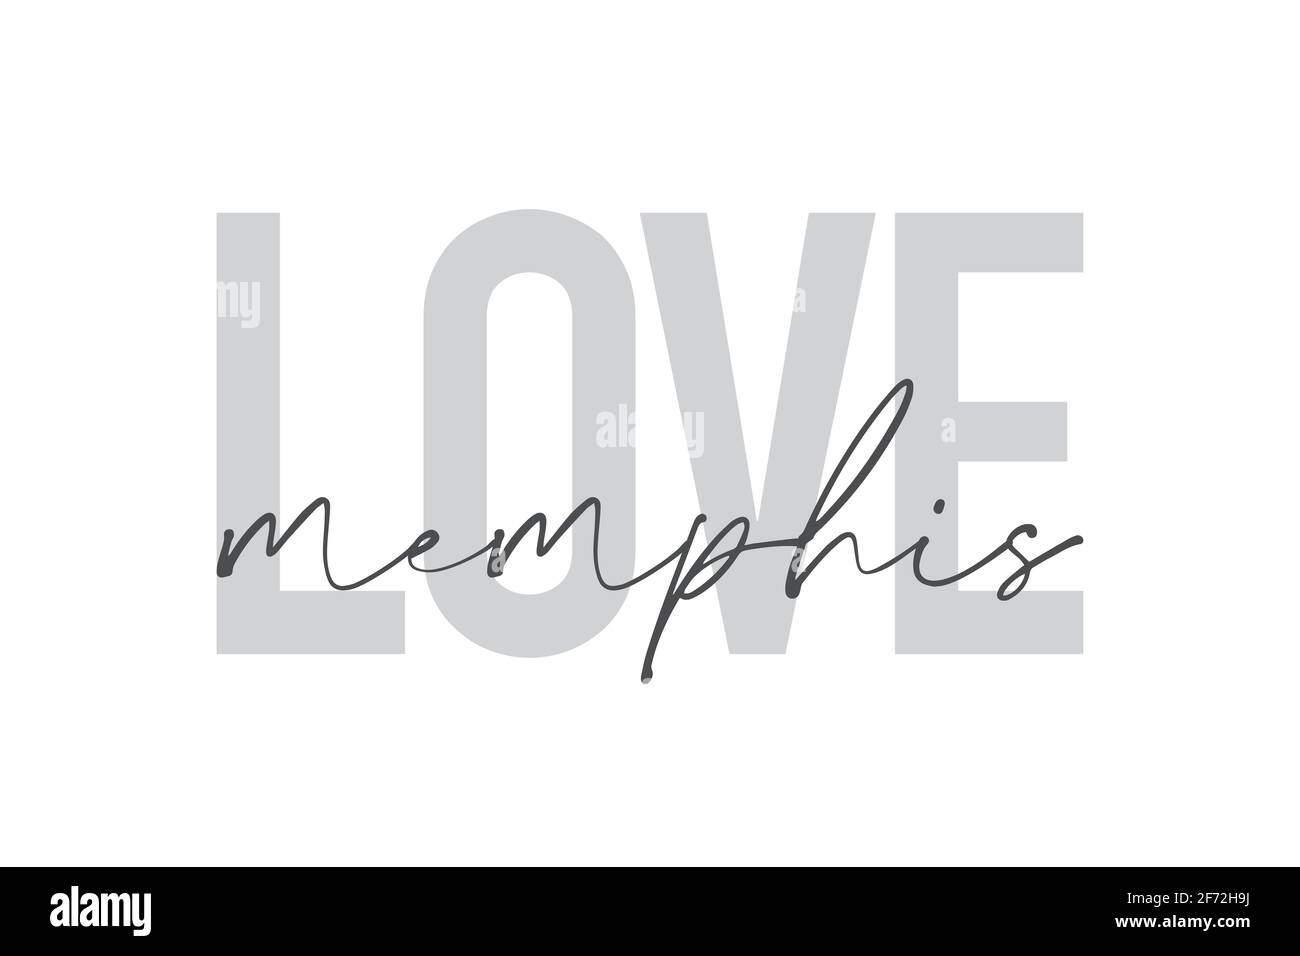 Design graphique moderne, urbain et simple d'un « Love Memphis » aux couleurs grises. Typographie manuscrite, tendance et tendance Banque D'Images